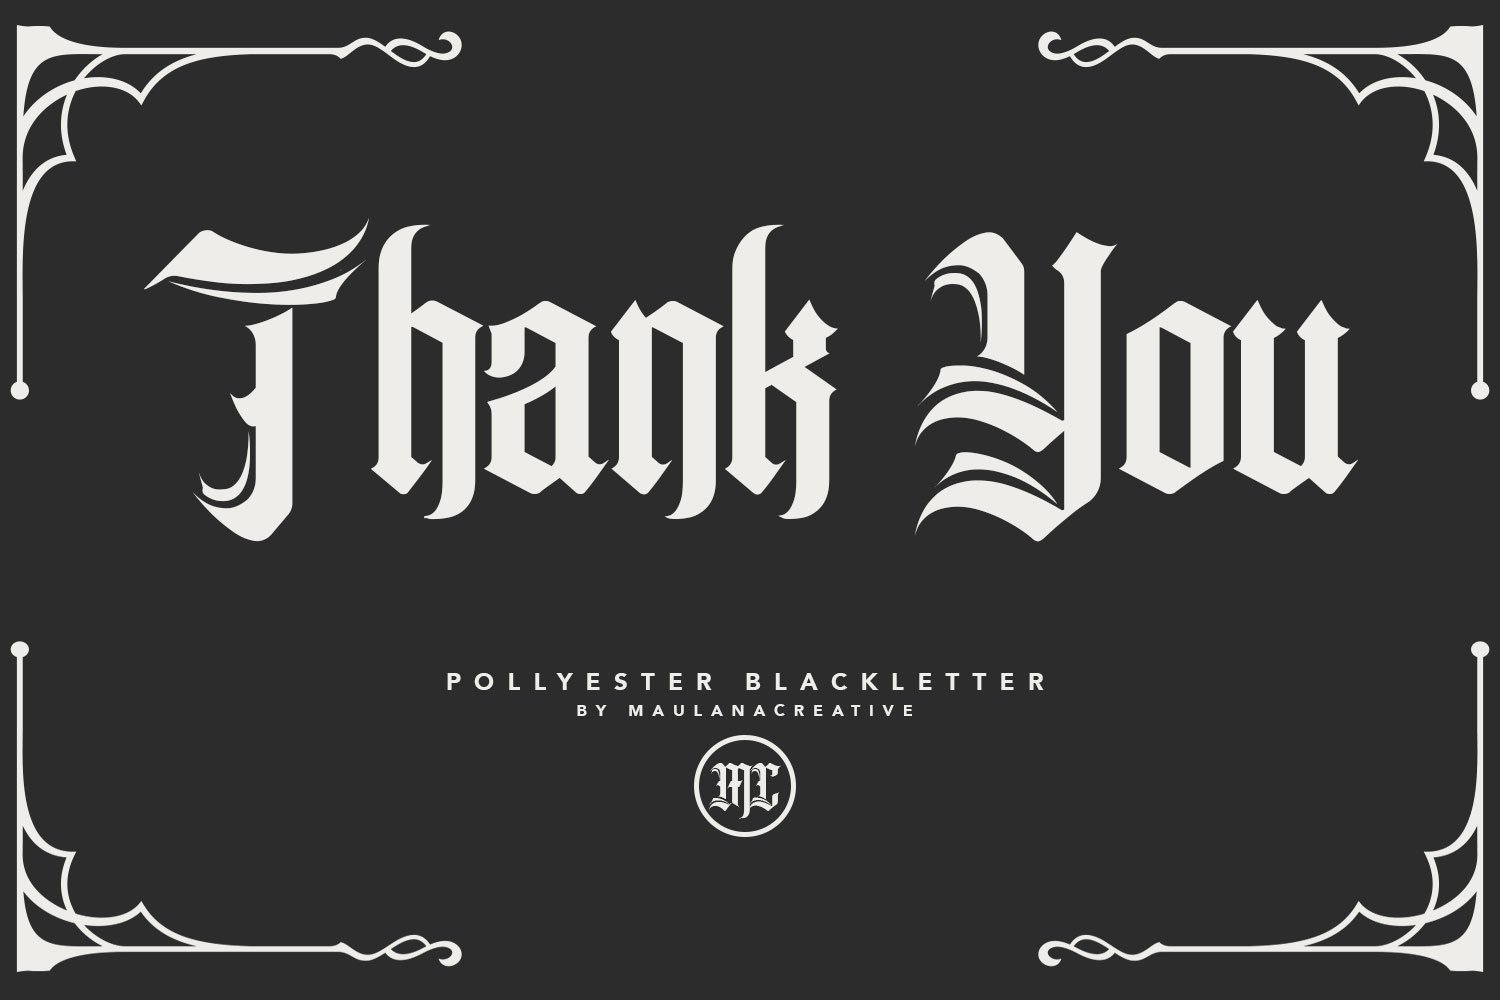 pollyester blackletter typeface 8 118